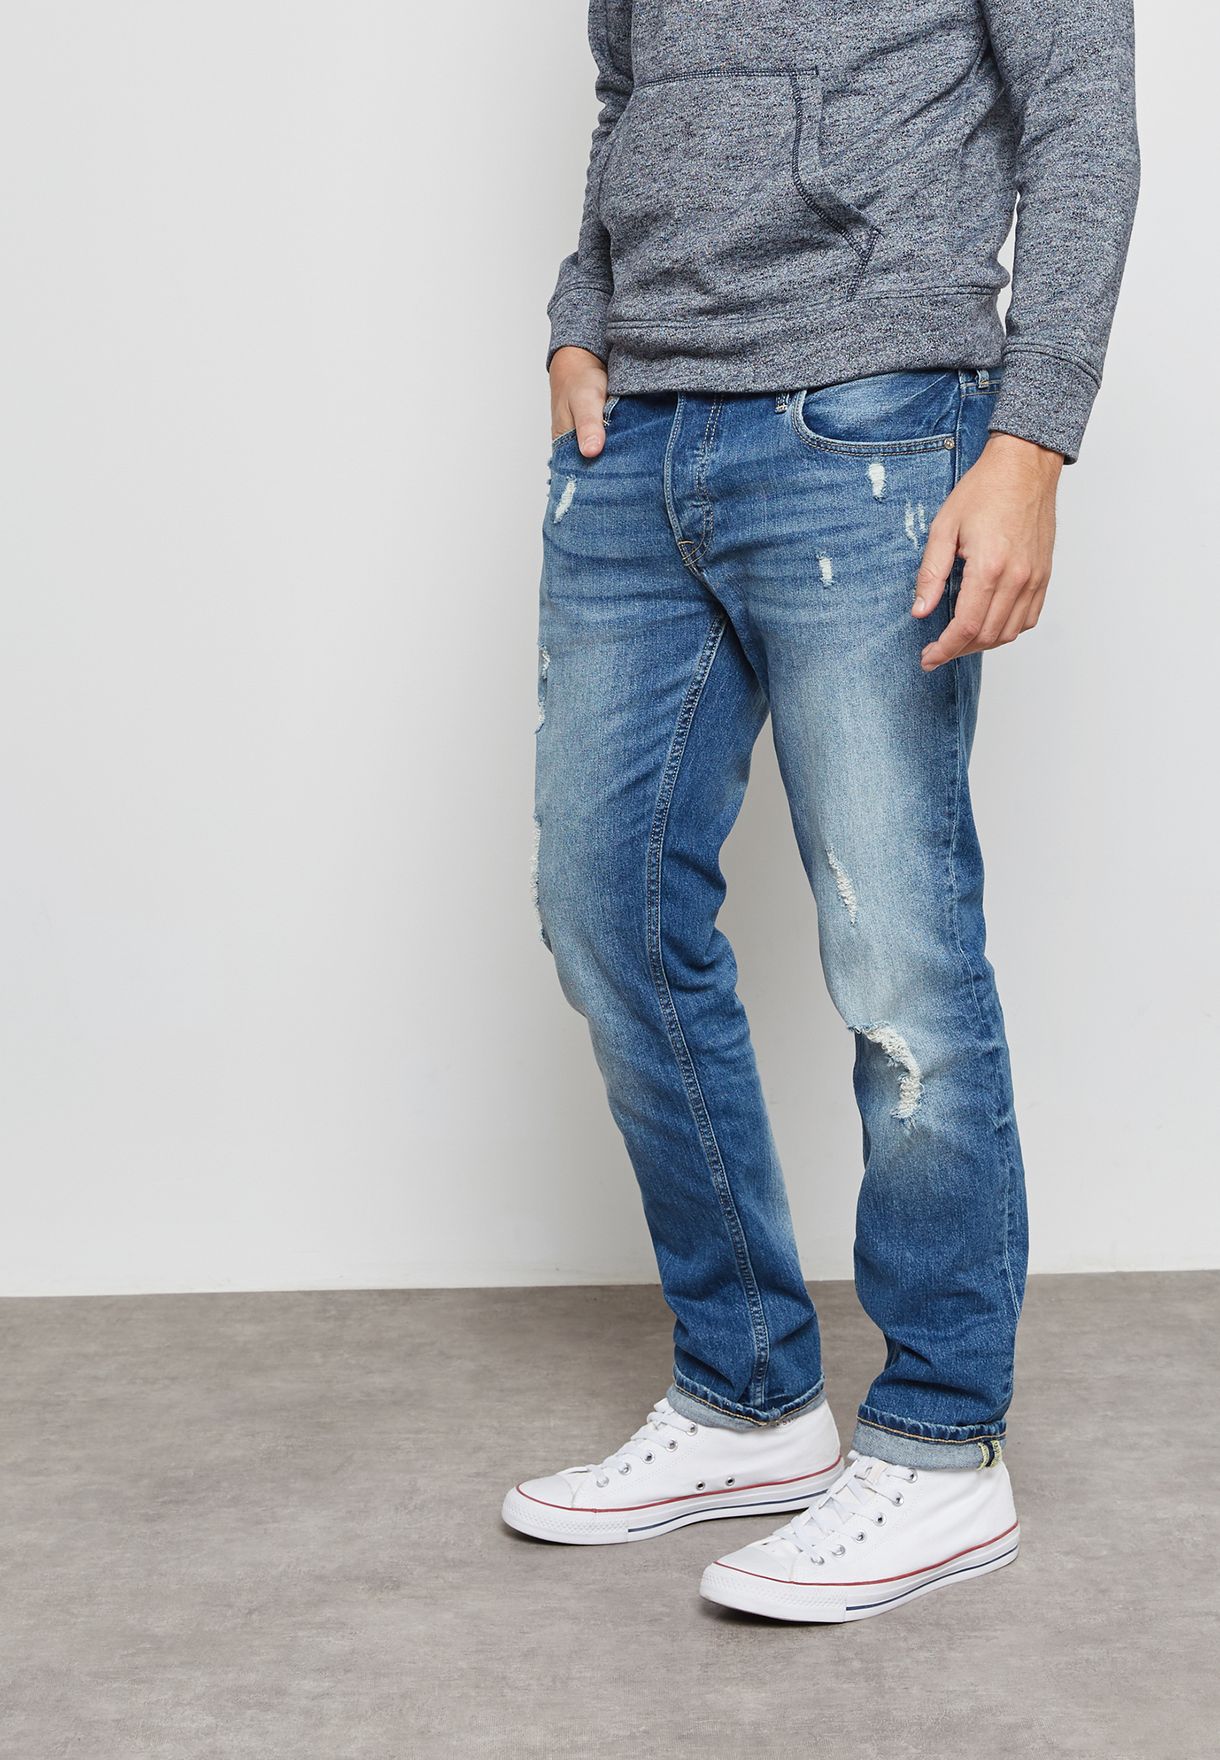 verhaal Vochtig Onze onderneming Buy Jack Jones blue Tim Slim Fit Jeans for Men in MENA, Worldwide